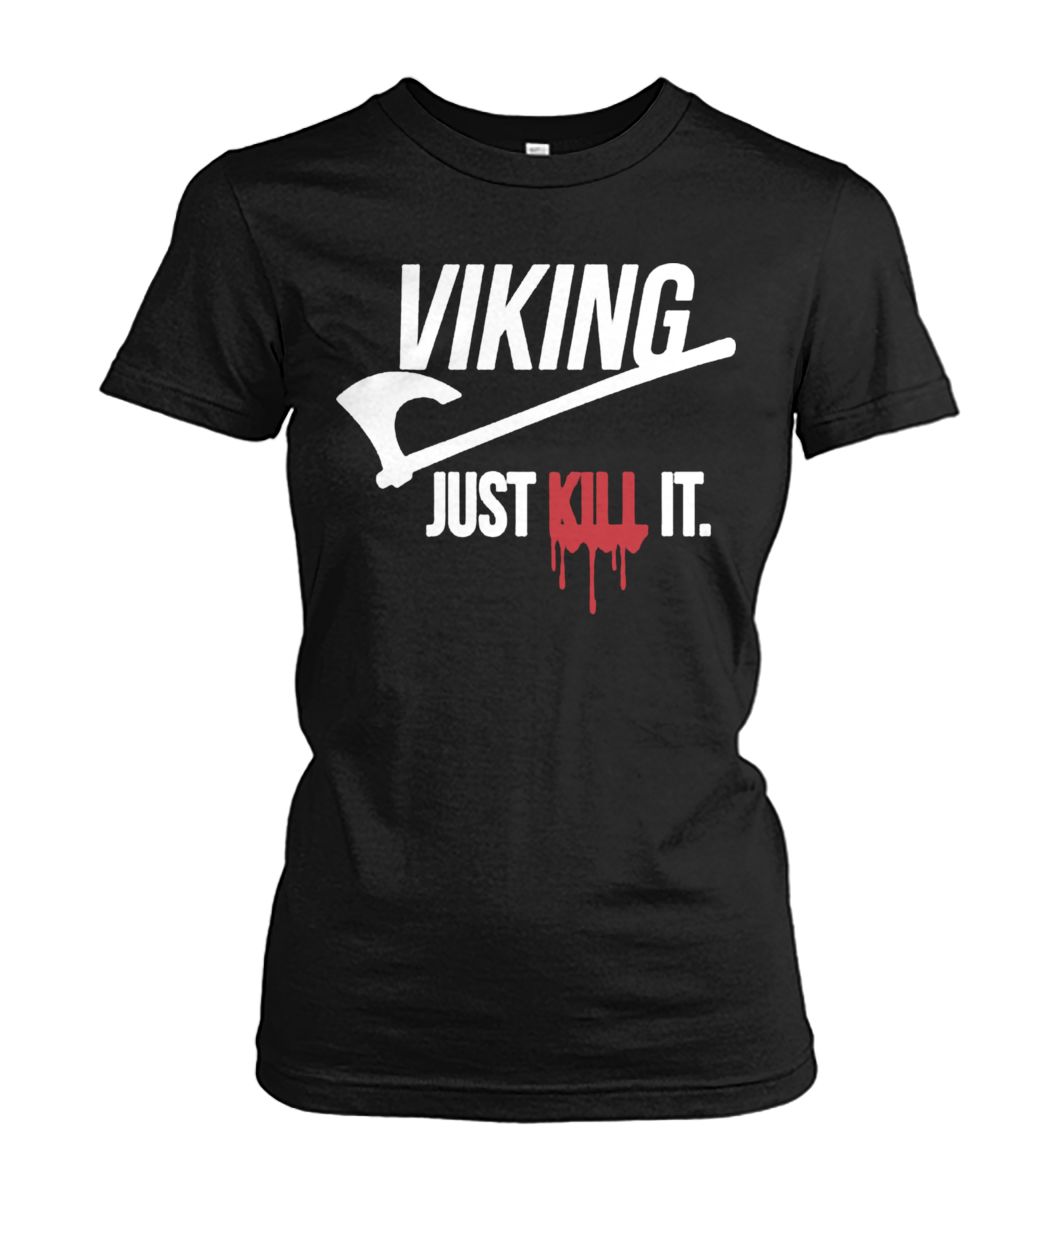 Viking just kill it women's cew tee